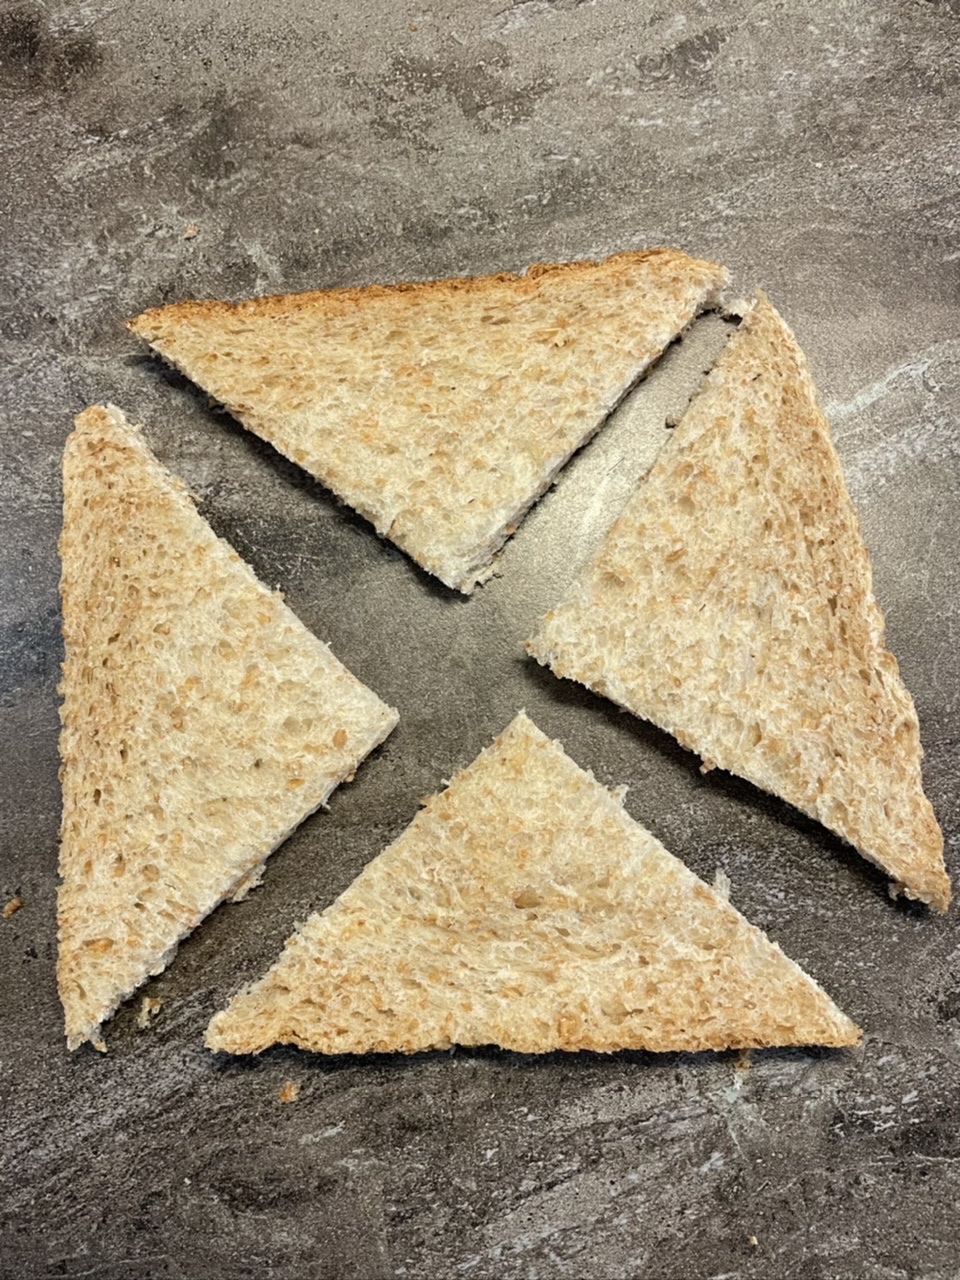 Bild zum Schritt 19 für das Bastel- und DIY-Abenteuer für Kinder: 'So entstehen insgesamt vier Dreiecke aus einer Scheibe Toast.'